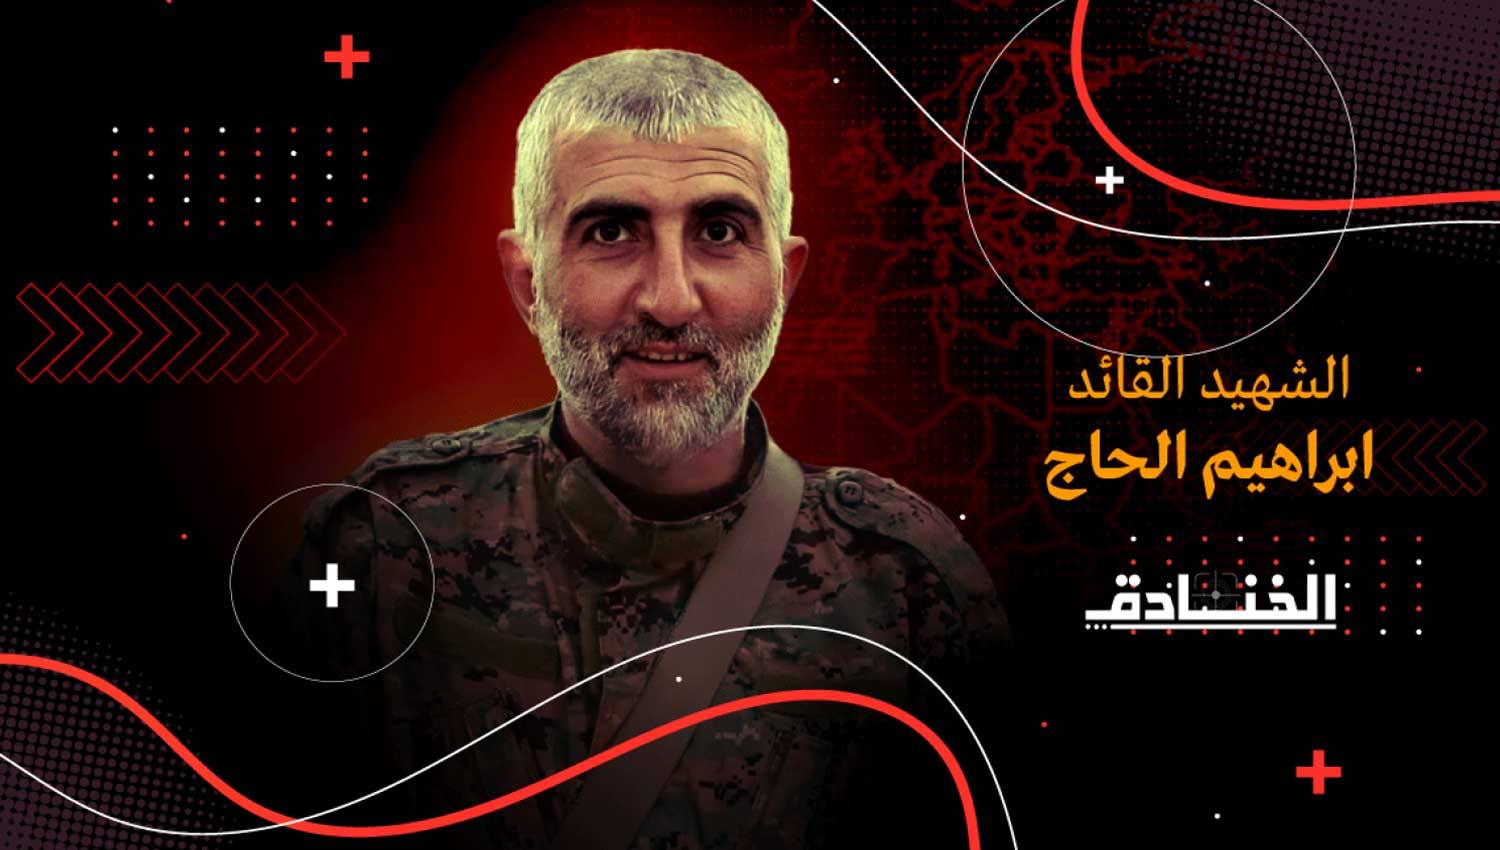 الشهيد أبو محمد سلمان: قائد العمليات النوعية في لبنان وسوريا والعراق